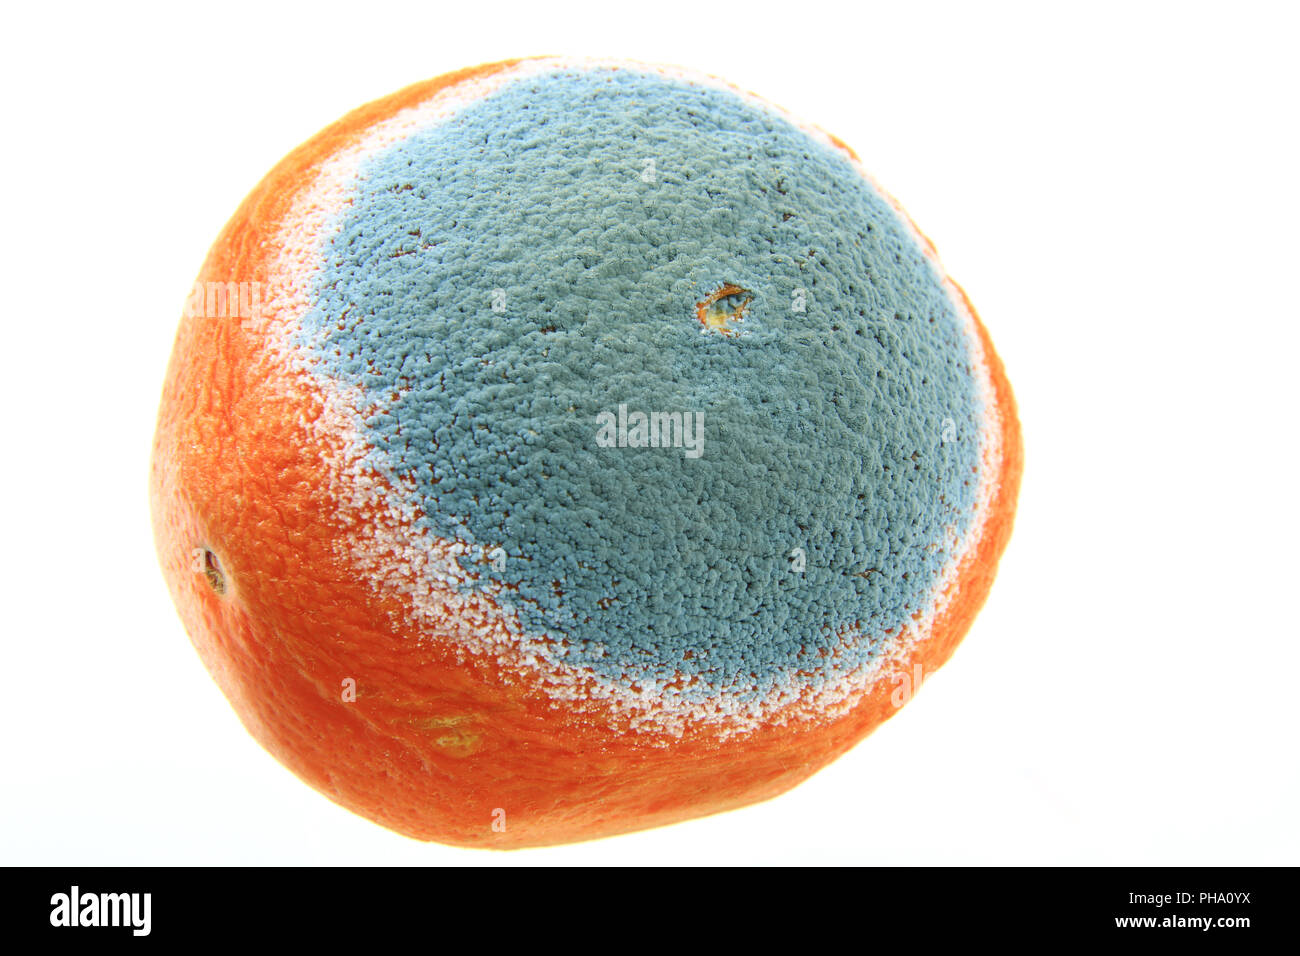 Mold on an orange Stock Photo